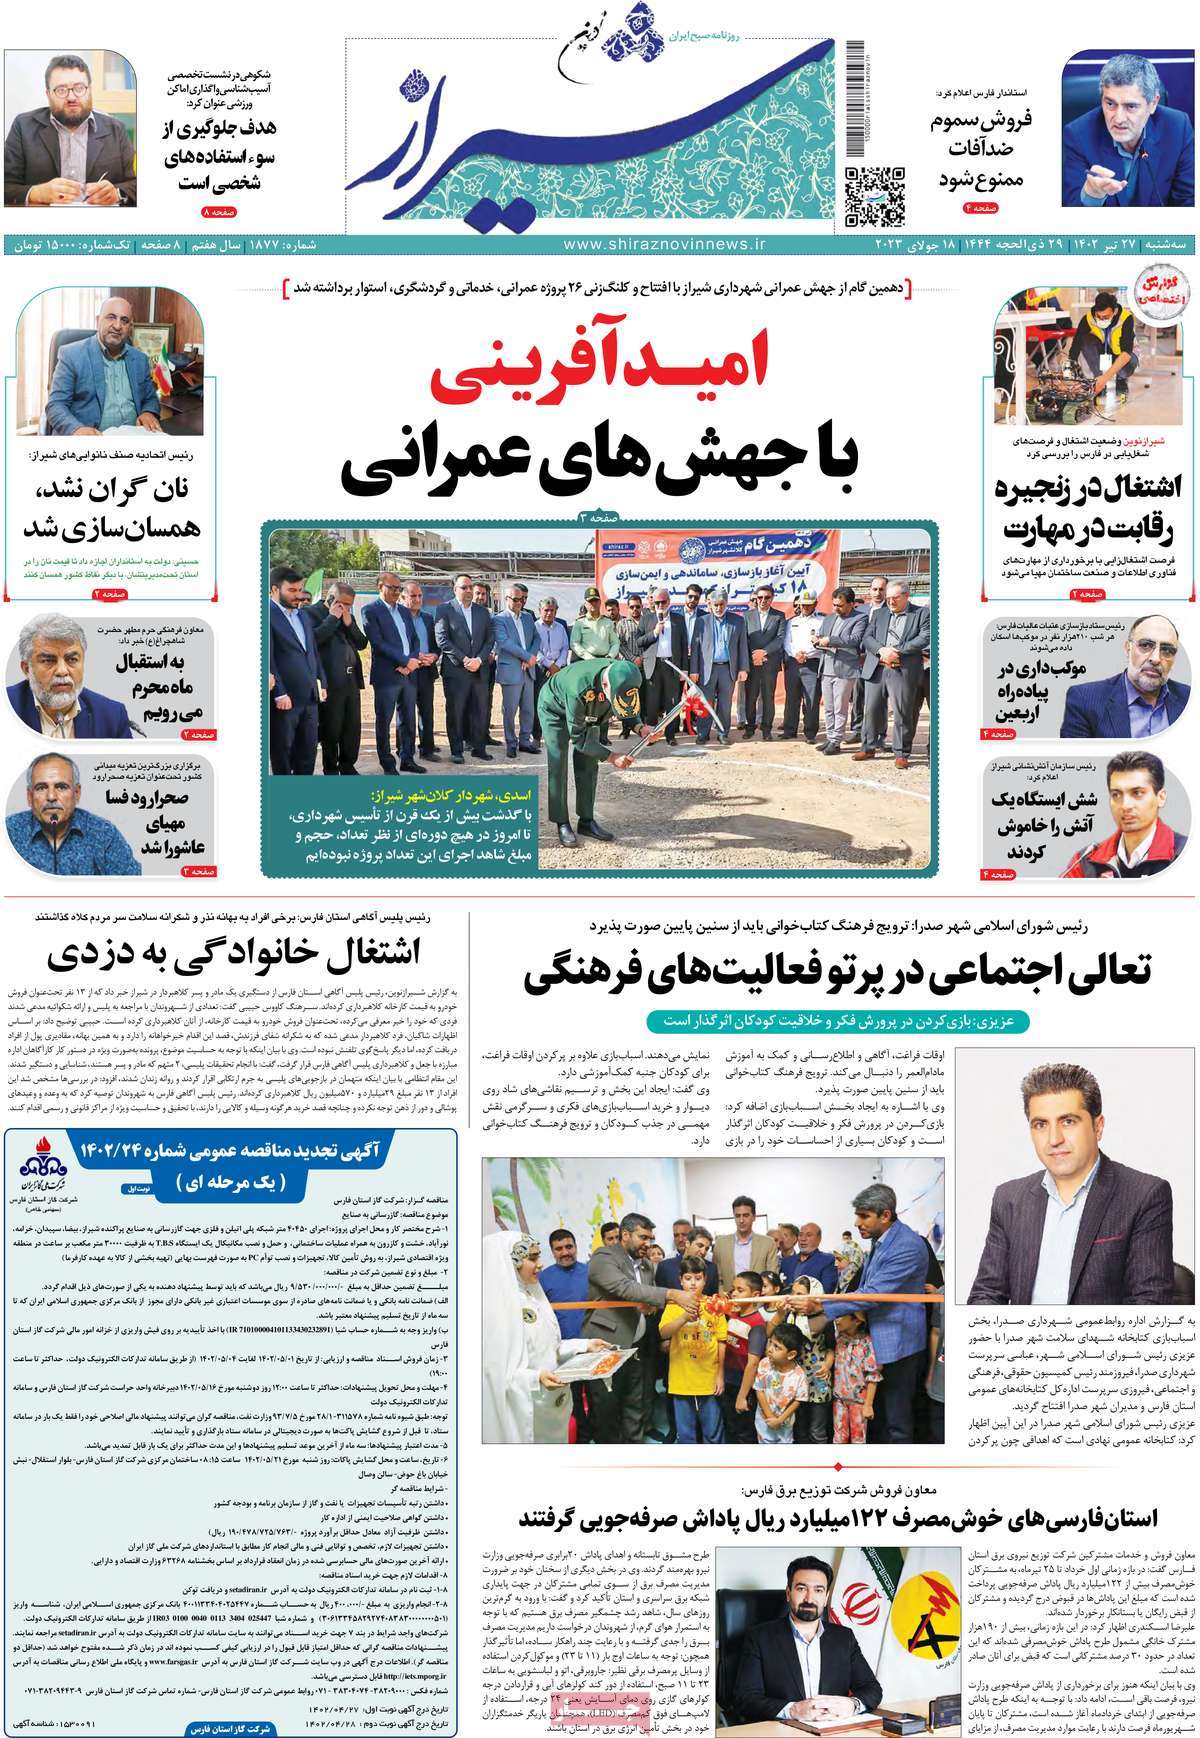 صفحه اول روزنامه های استانی / صفحه اول روزنامه های استانی / روزنامه شیراز نوین